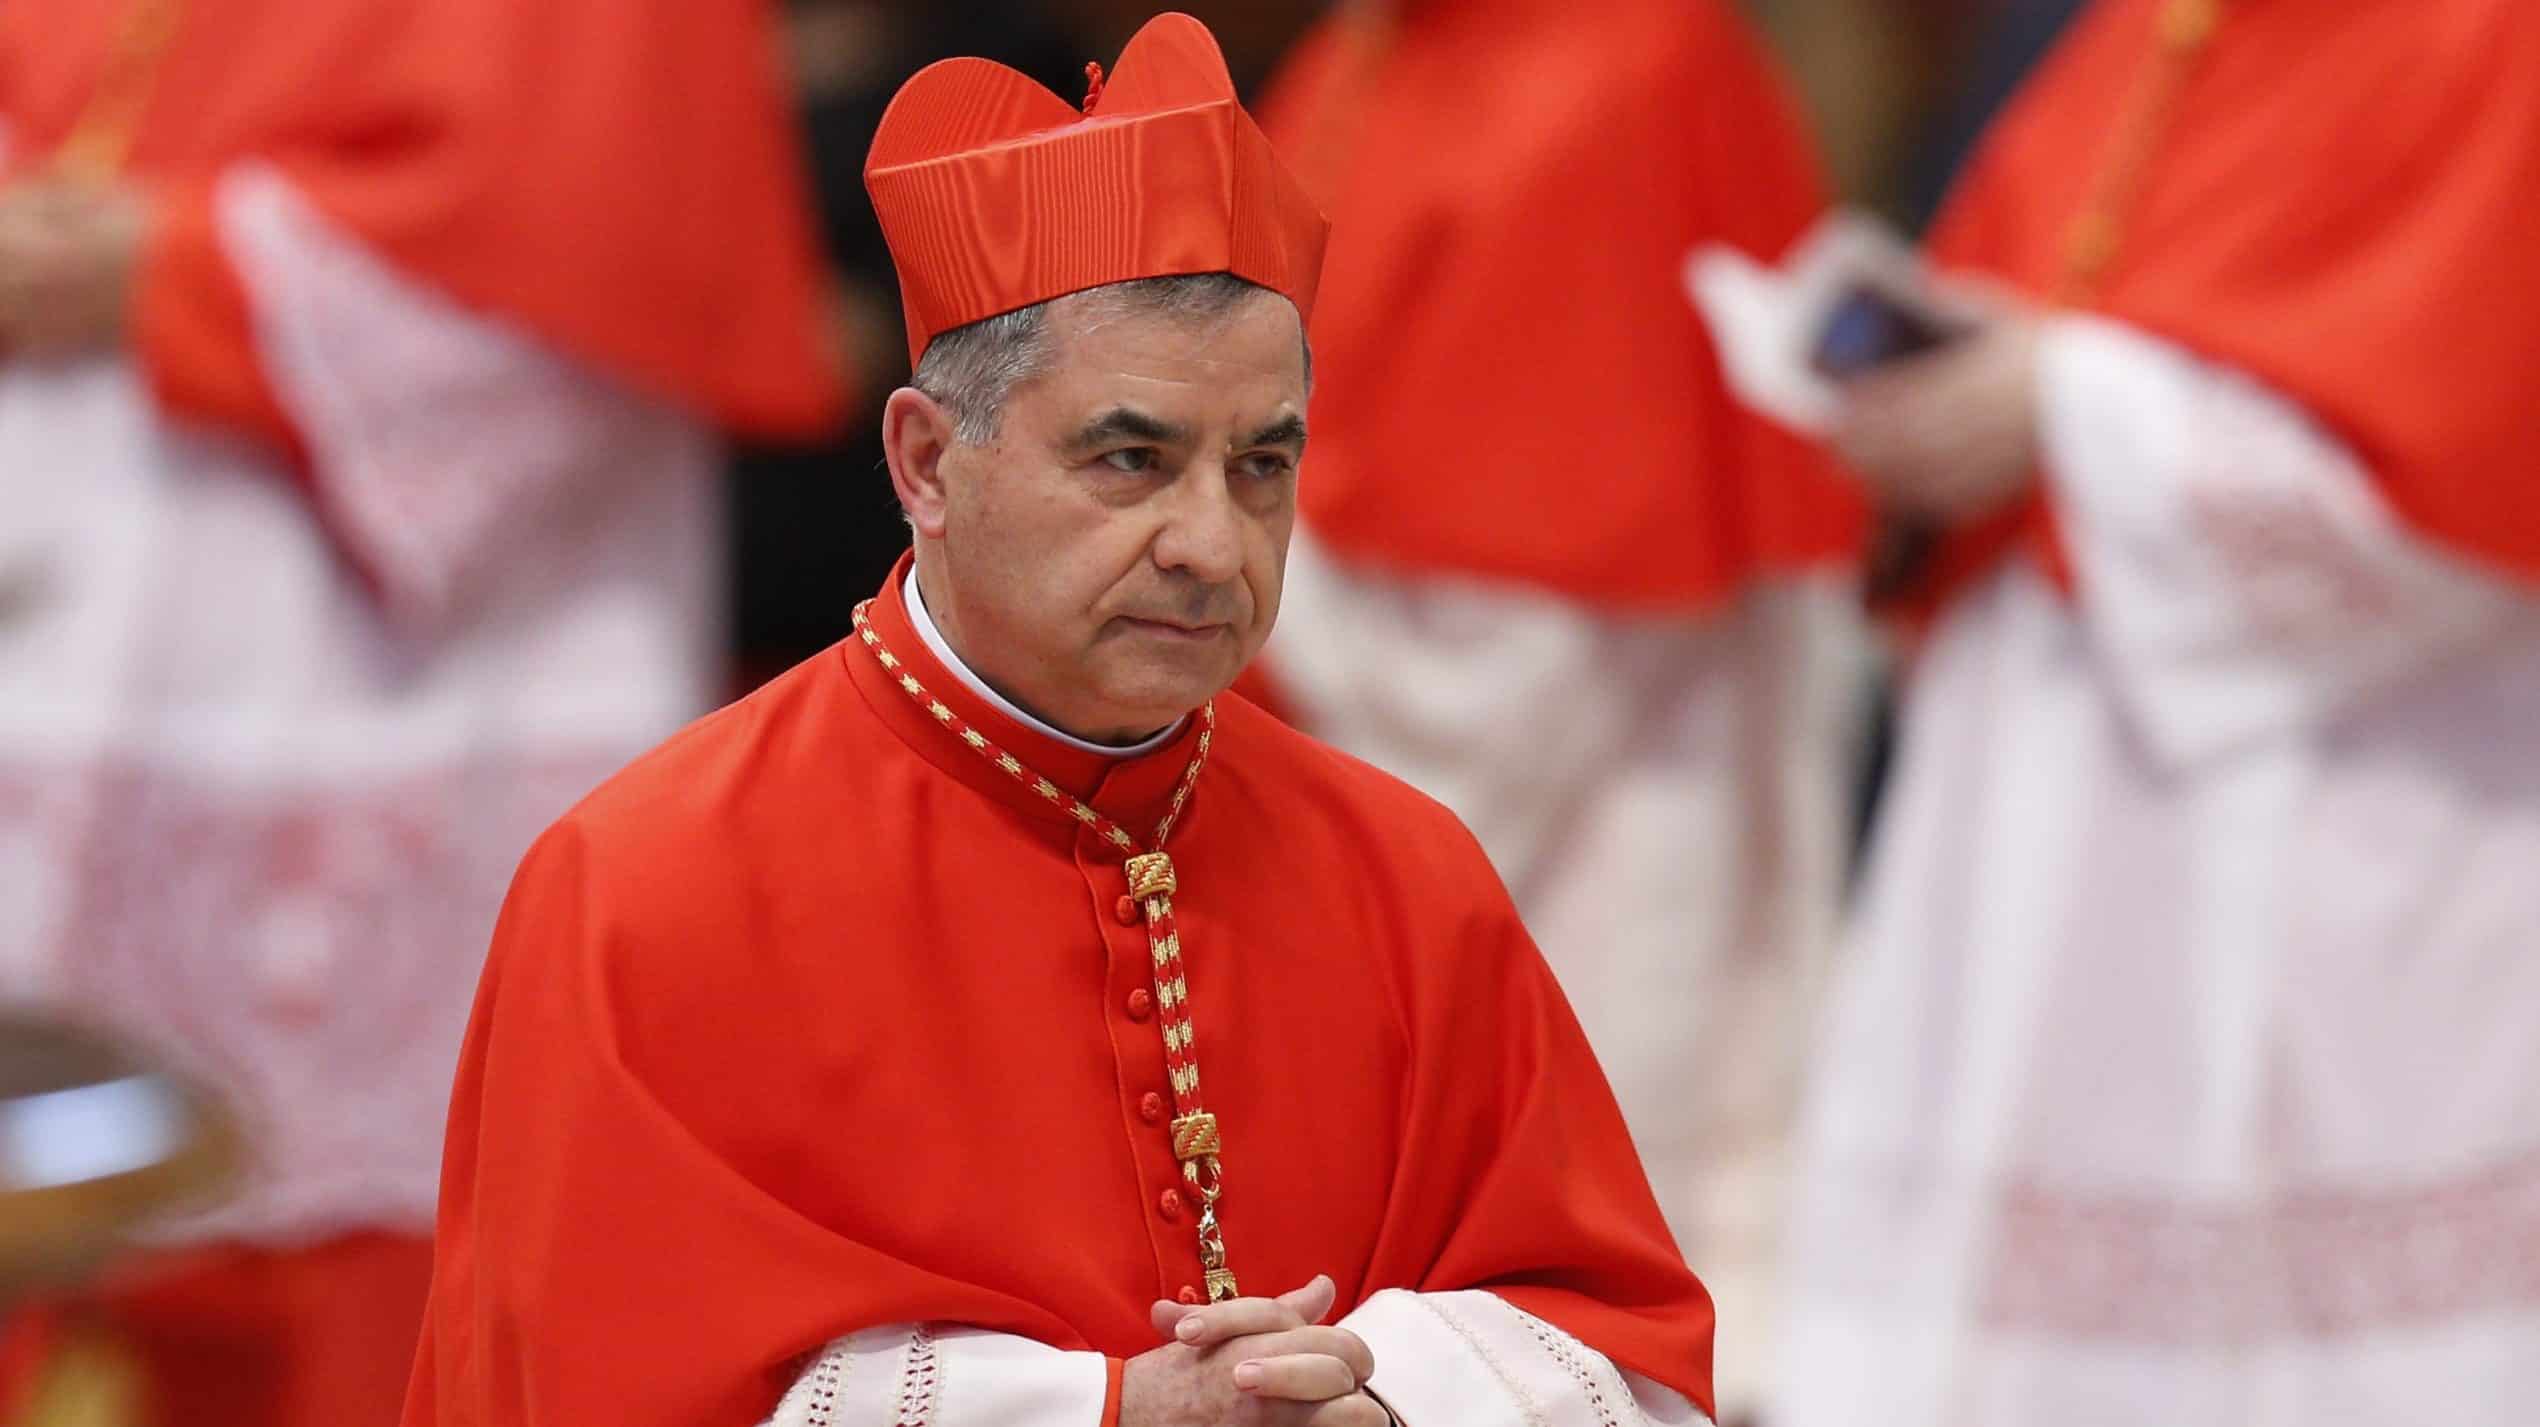 Corupție în numele Domnului: Cardinal condamnat la 5 ani de închisoare